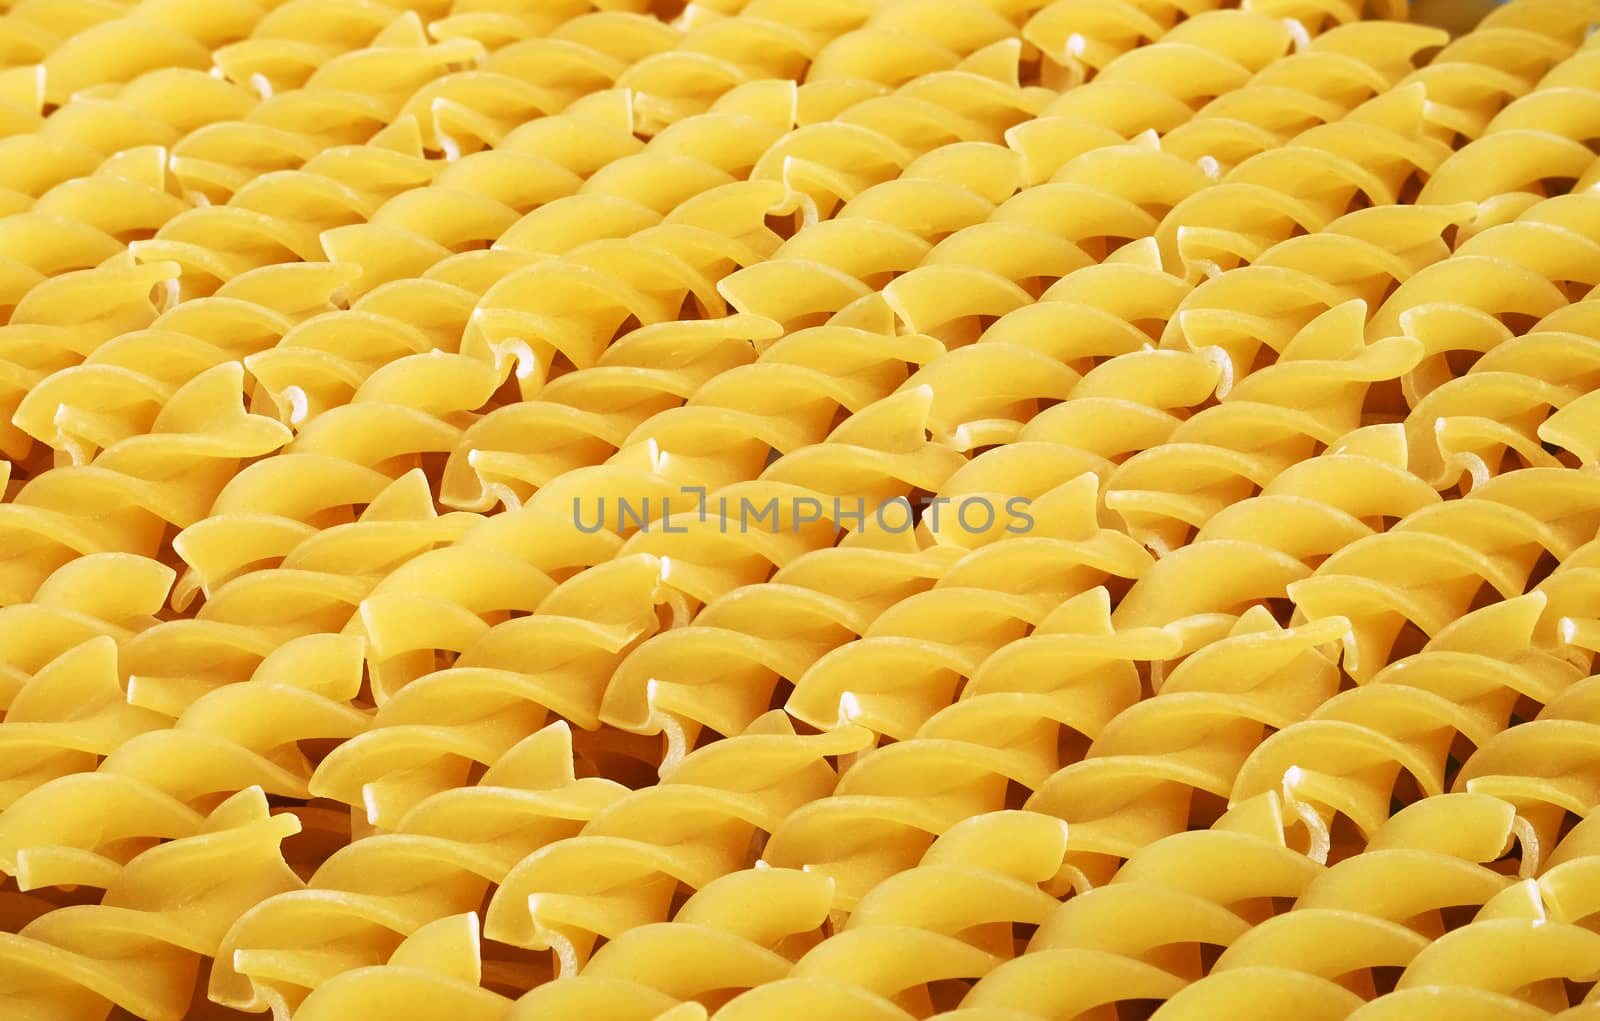 Uncooked fusilli pasta by leventina